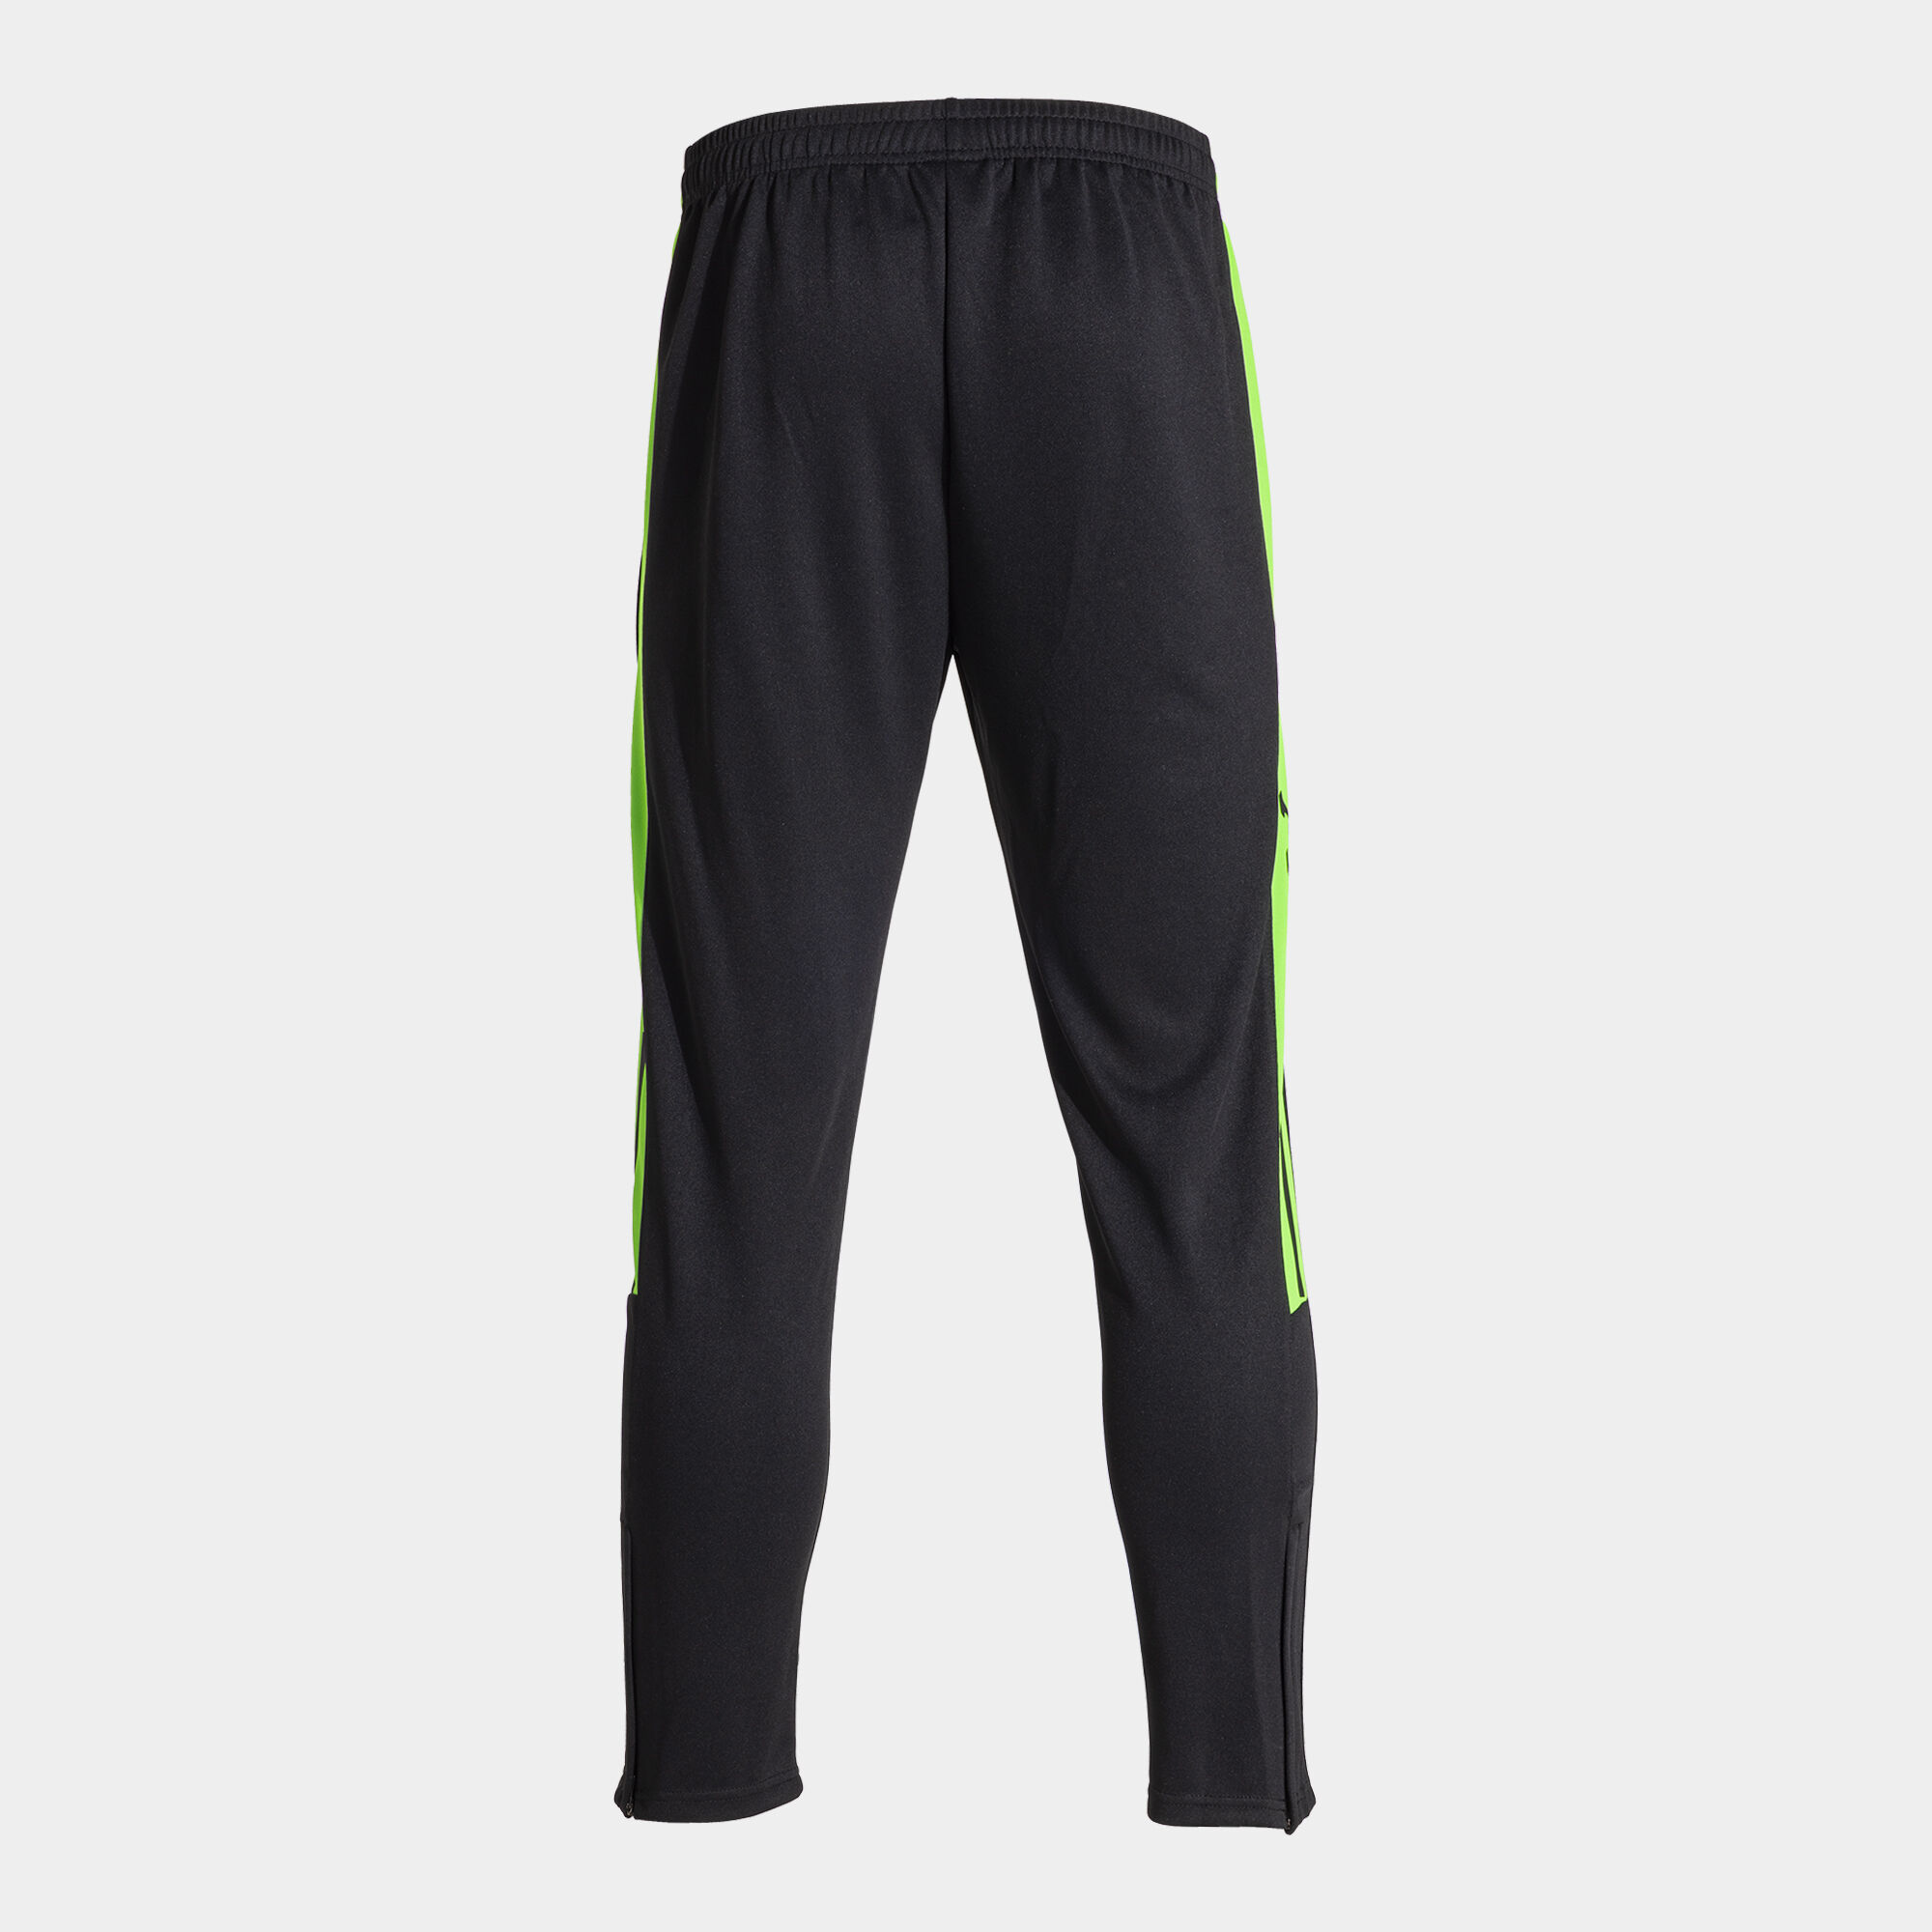 Pantaloni lungi bărbaȚi Olimpiada negru verde fosforescent